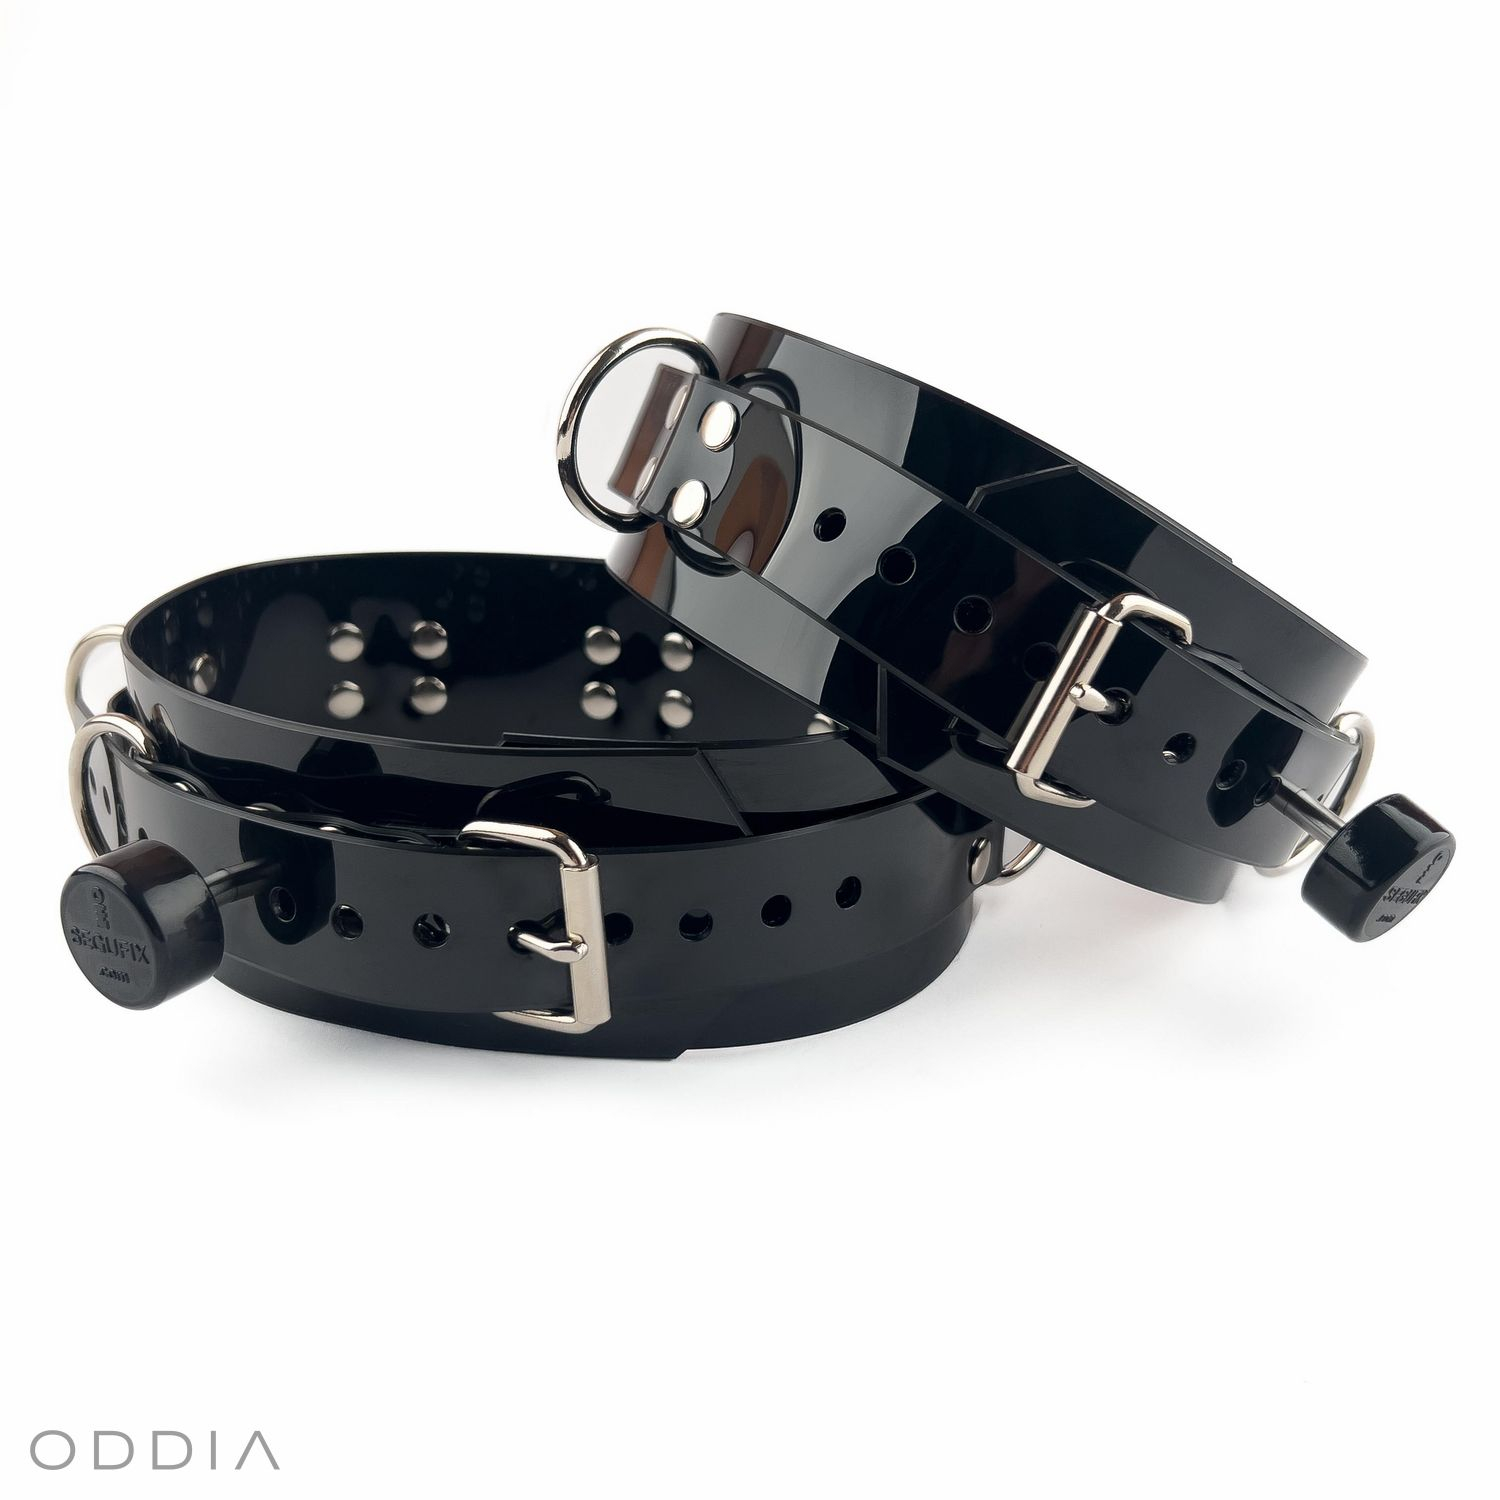 Черные запираемые БДСМ наручники на бедра с магнитными замками Segufix и качественной металлической отделкой серебристого цвета.